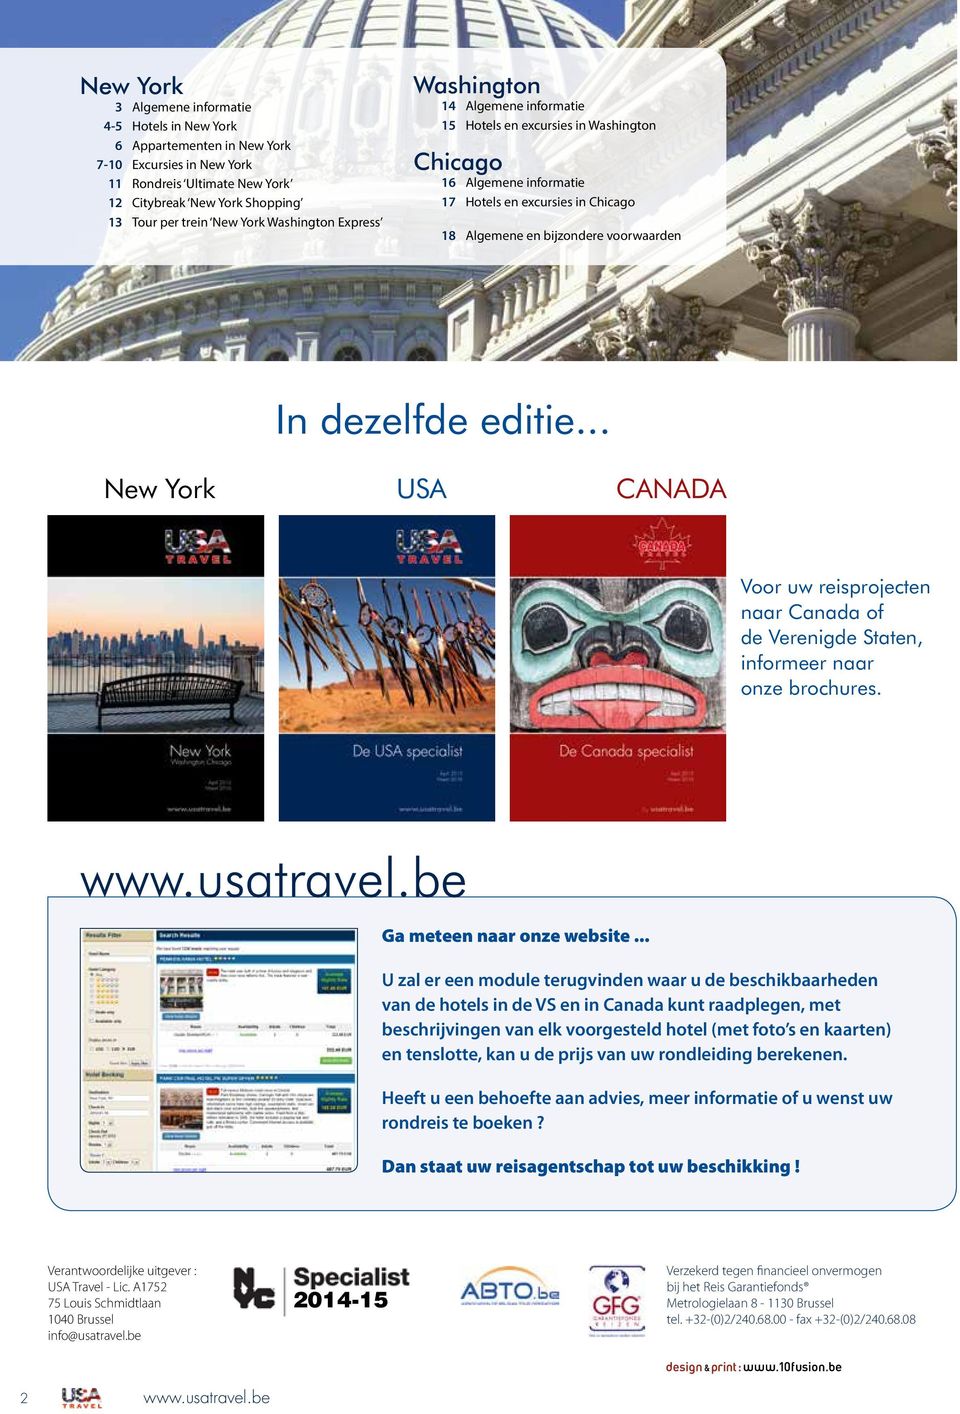 York In dezelfde editie... USA CANADA Voor uw reisprojecten naar Canada of de Verenigde Staten, informeer naar onze brochures. www.usatravel.be Ga meteen naar onze website.